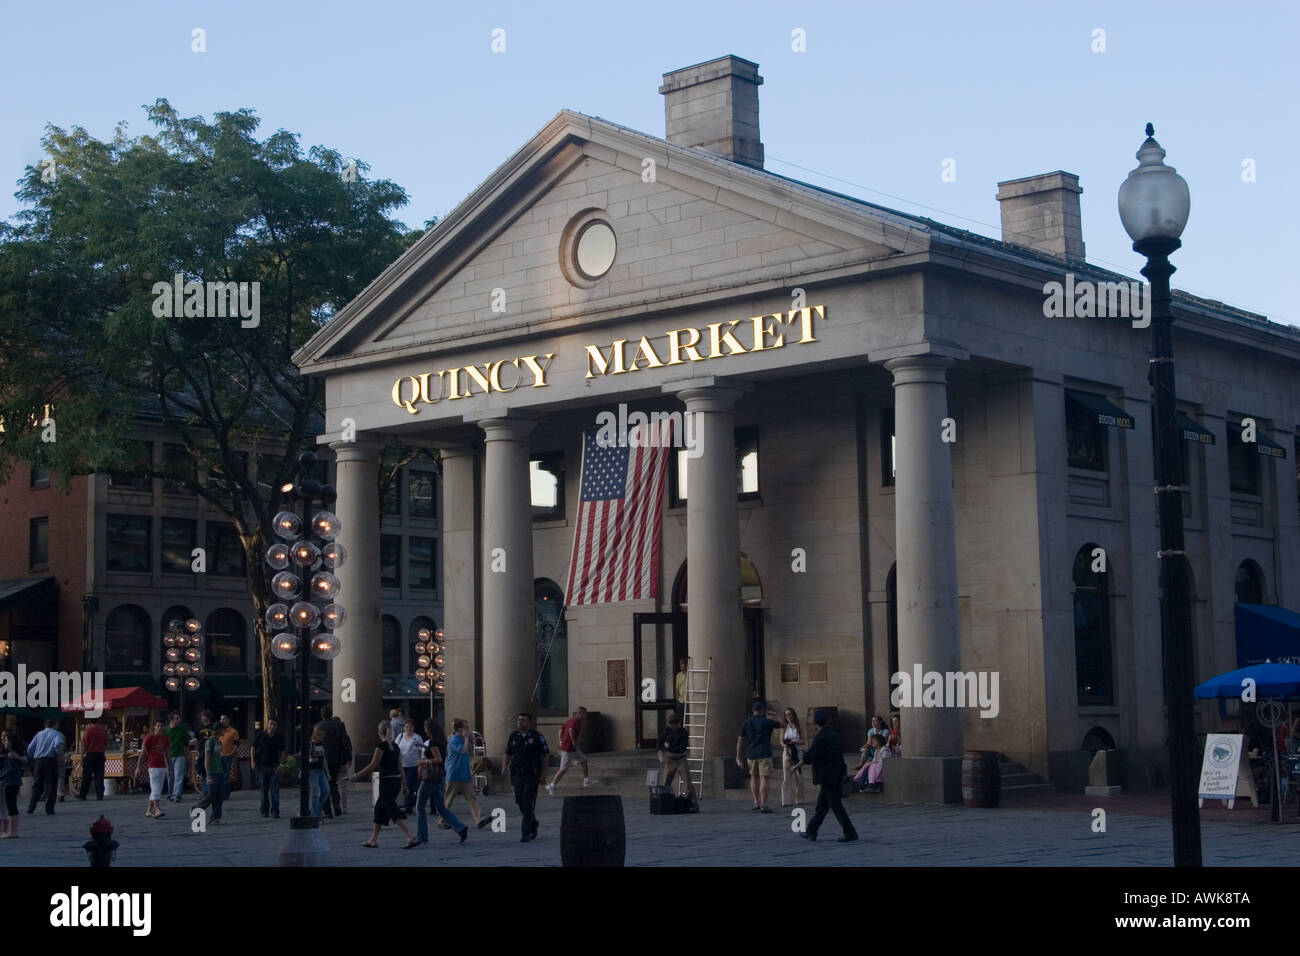 Quincy Market at dusk Boston Massachusetts USA Stock Photo